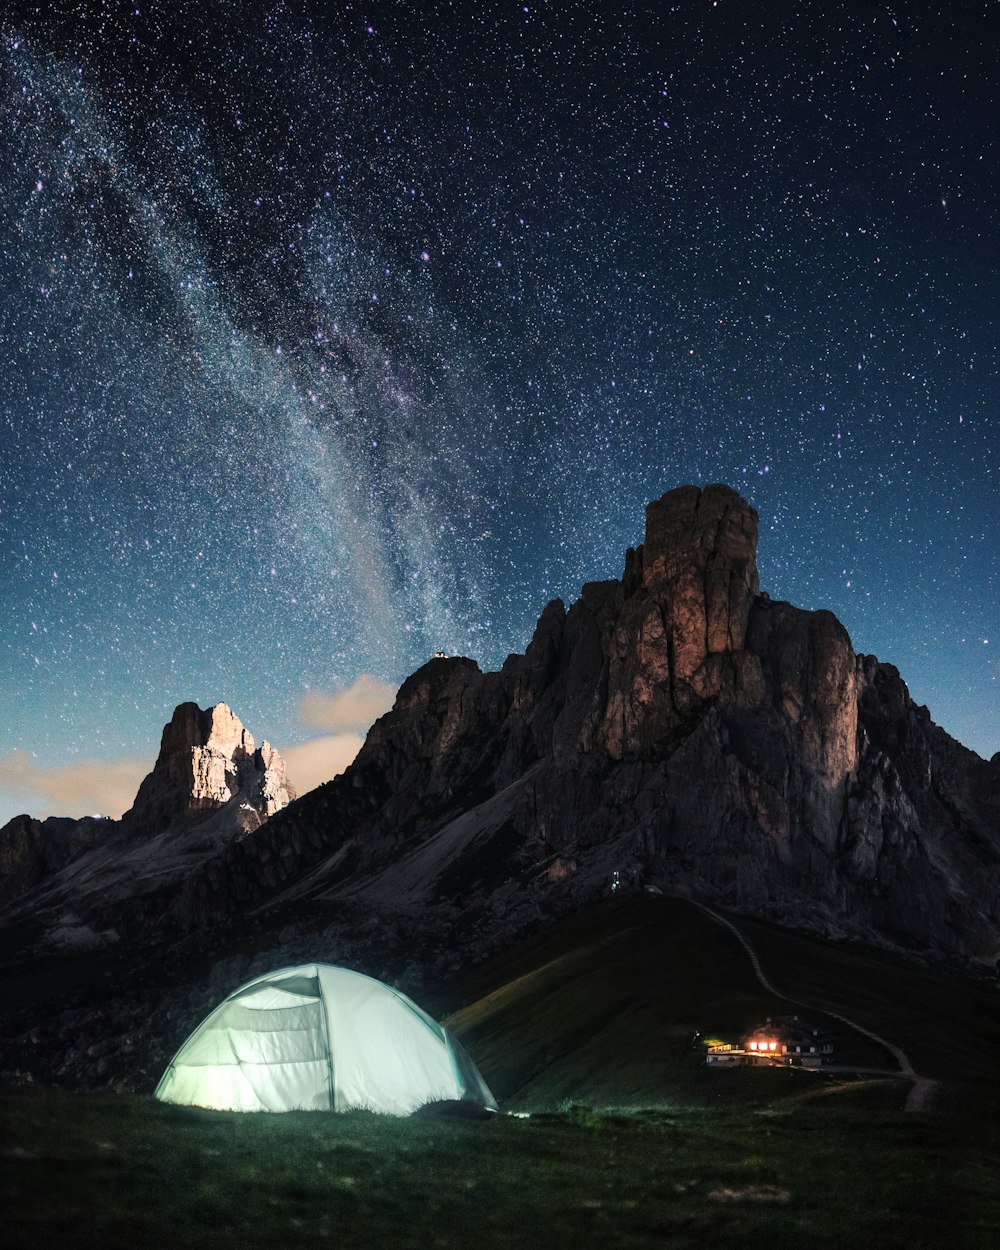 Tente dôme blanc près de la formation rocheuse brune sous le ciel bleu pendant la nuit